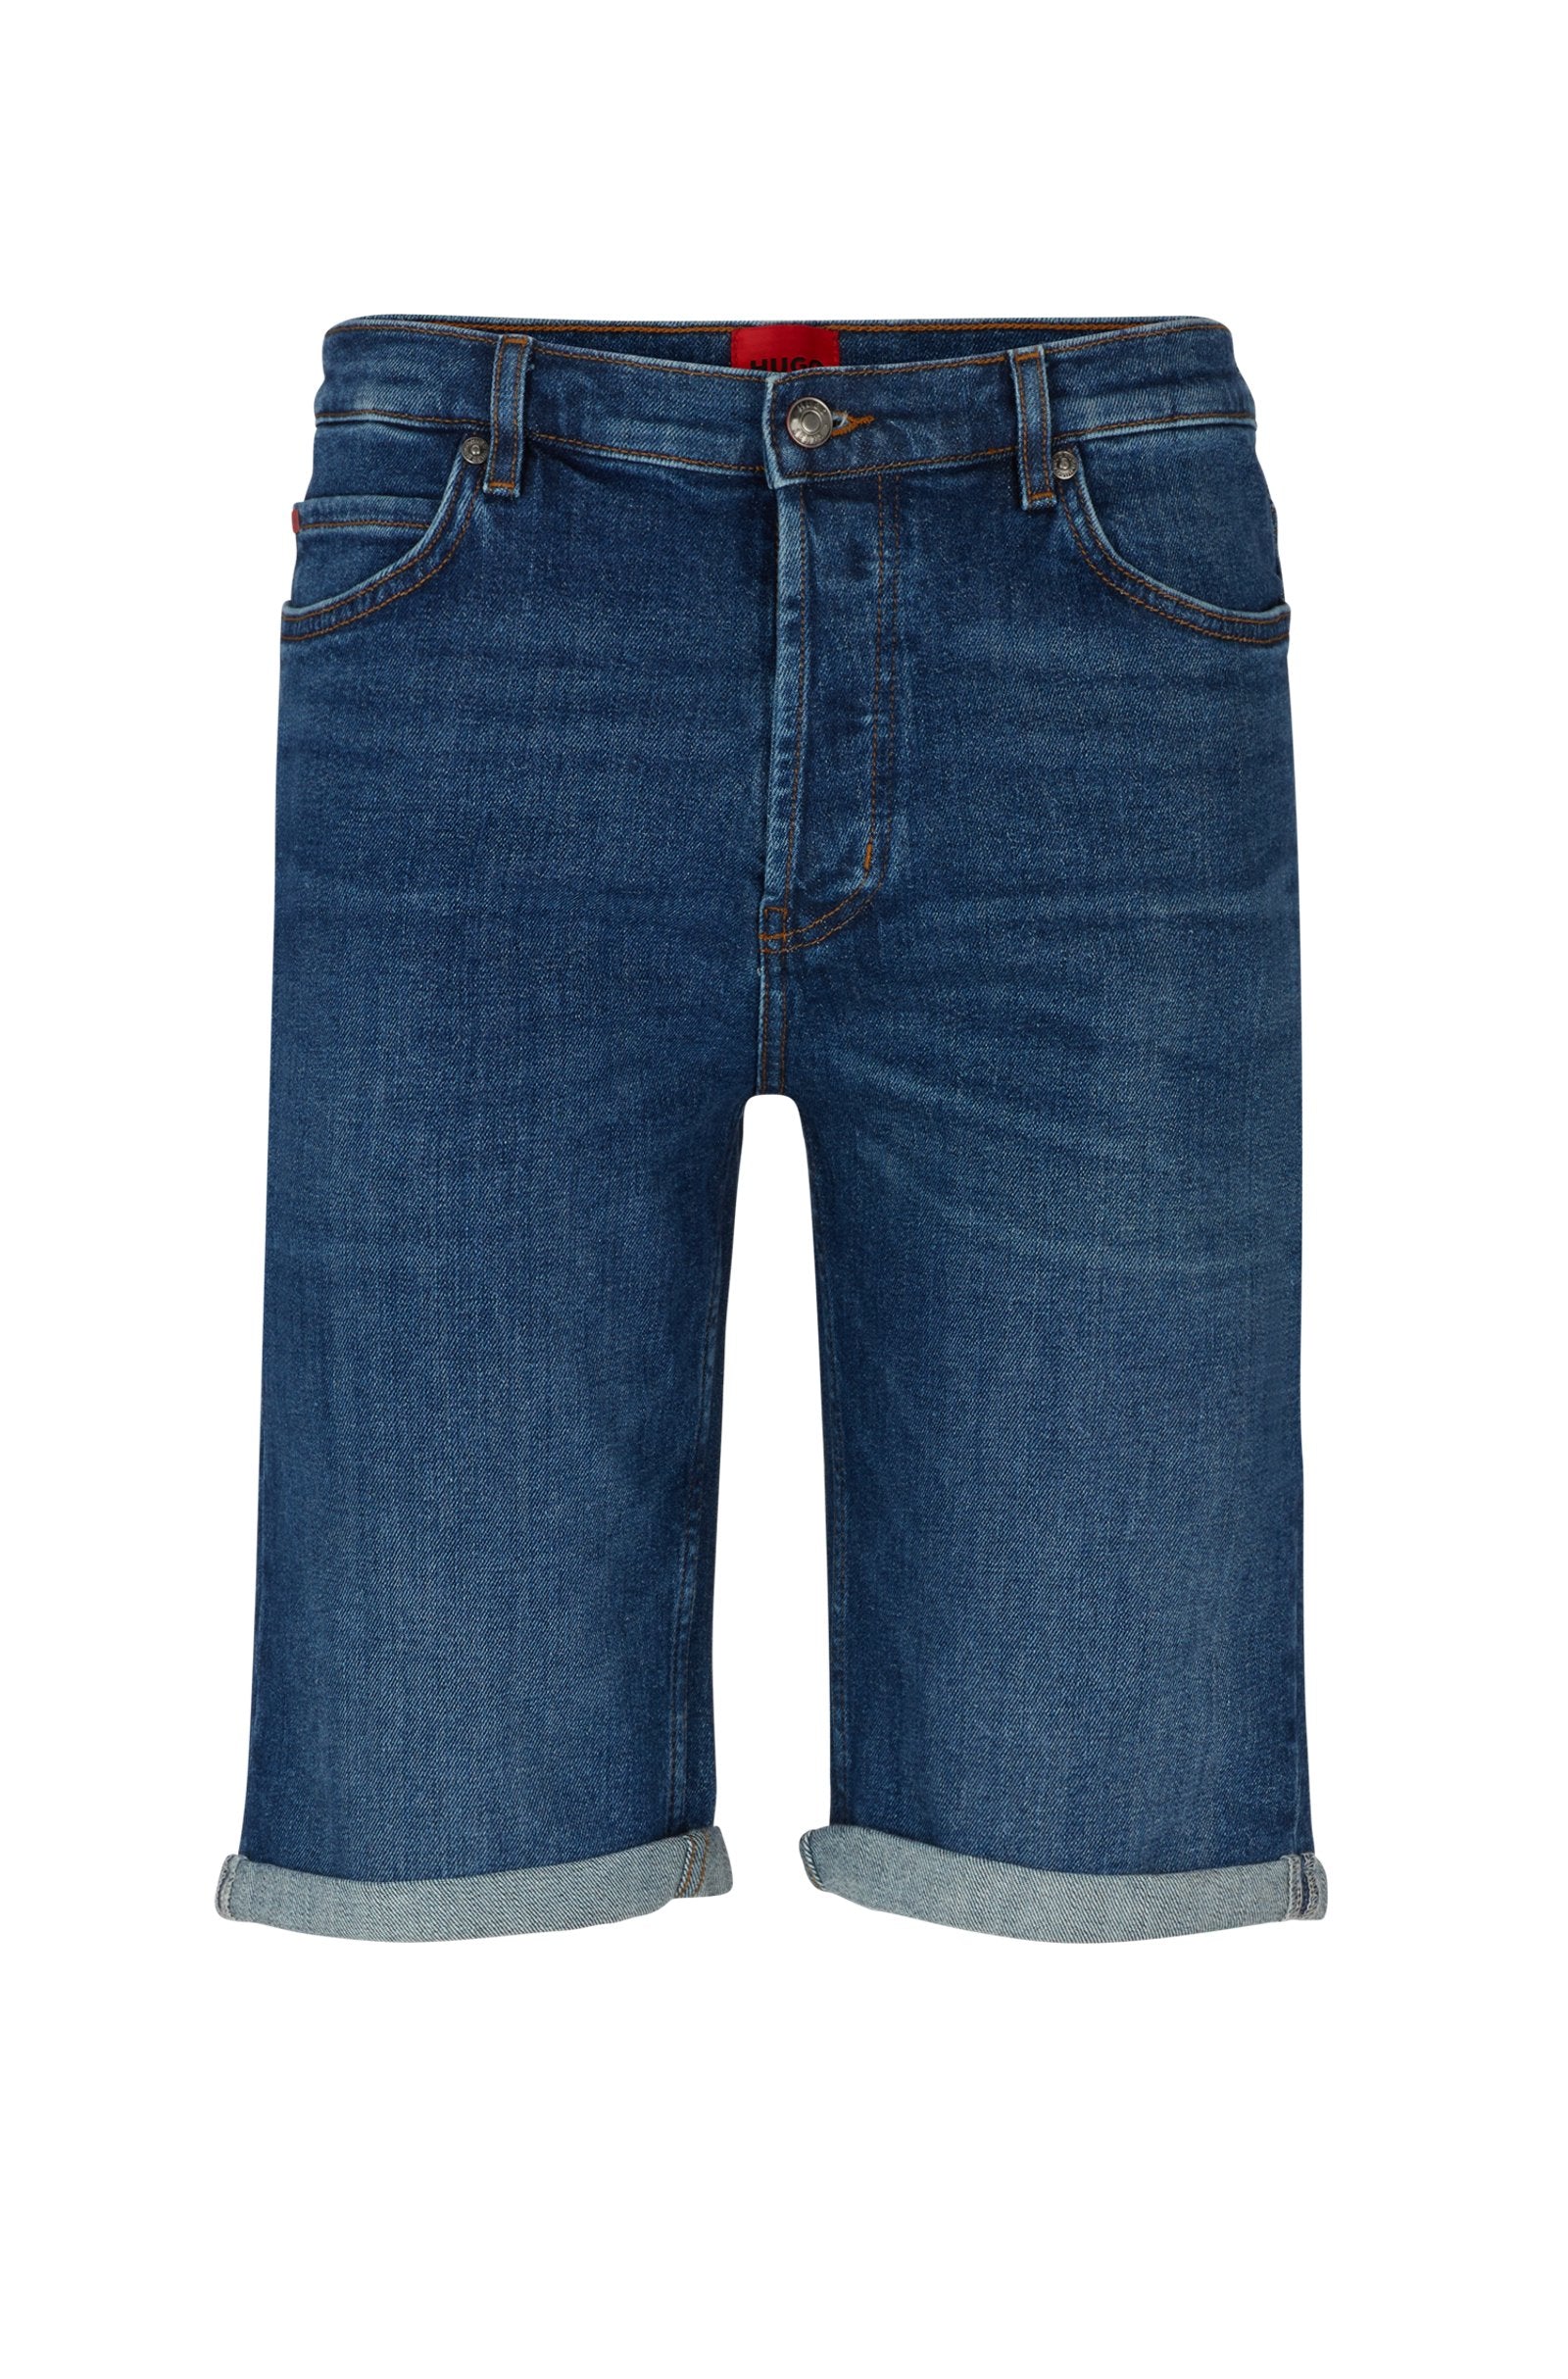 HUGO HUGO 634/S Jean Shorts 420 Medium Blue